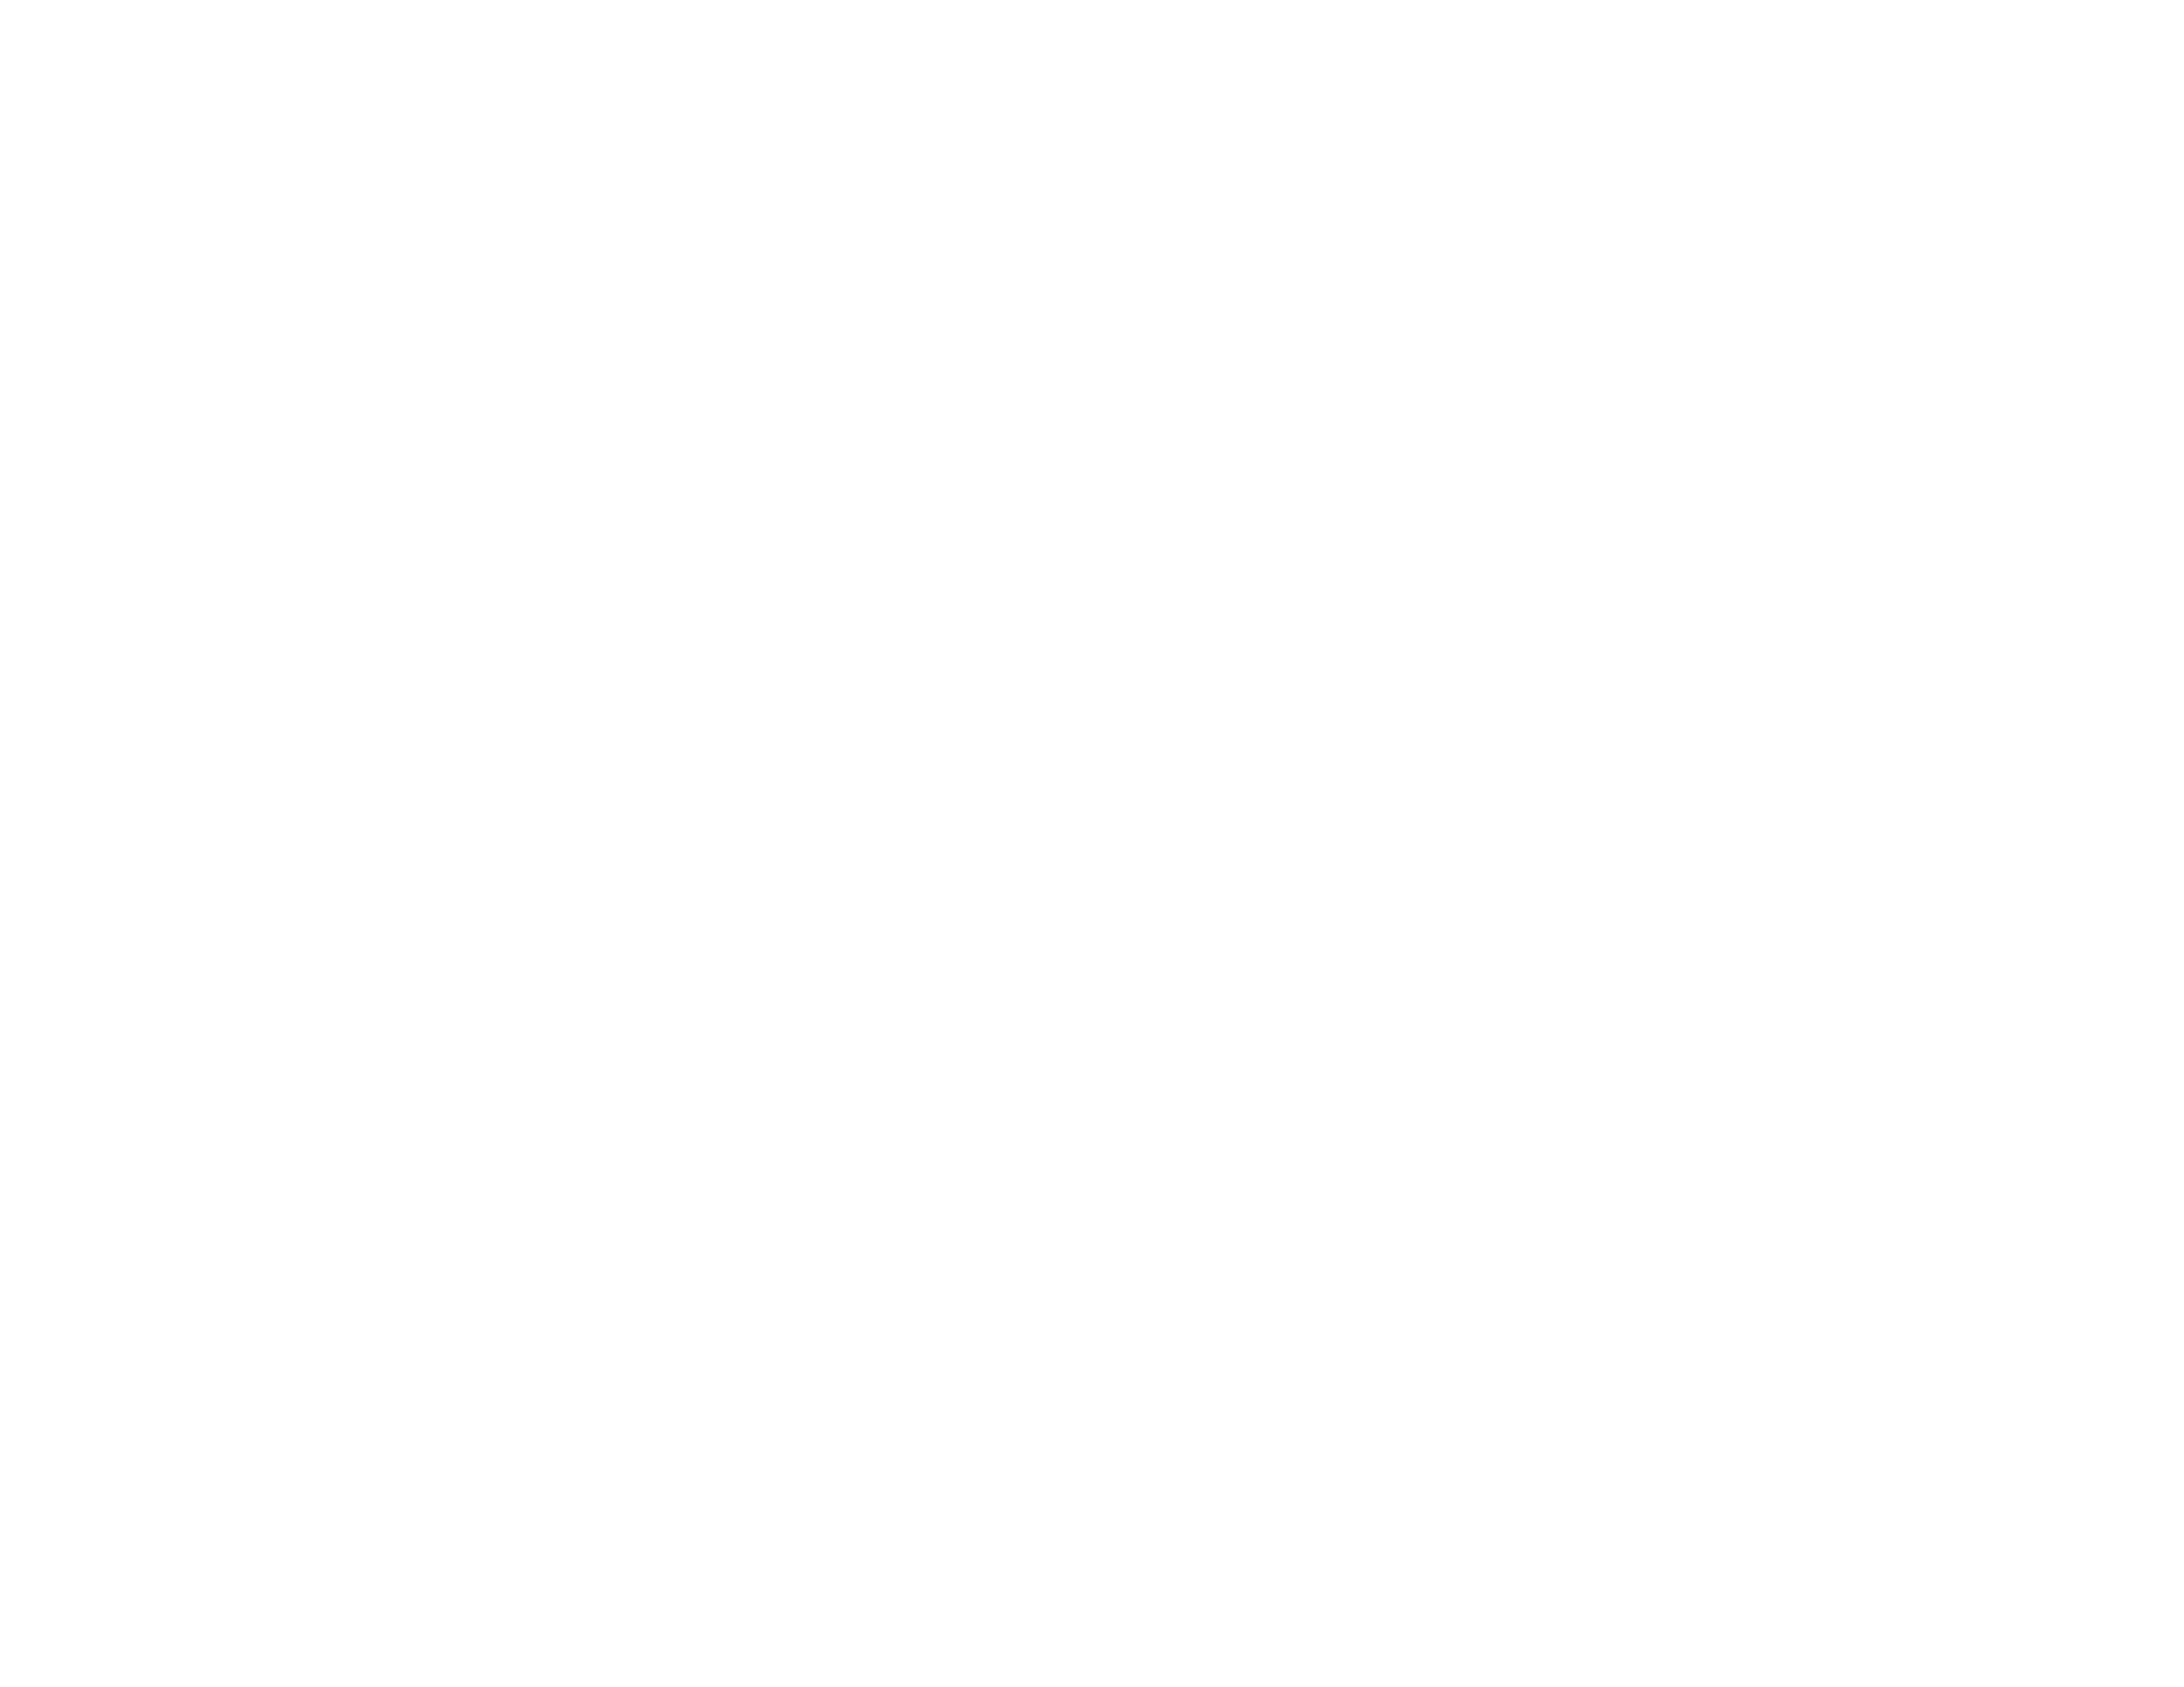 Dusit Place Guam